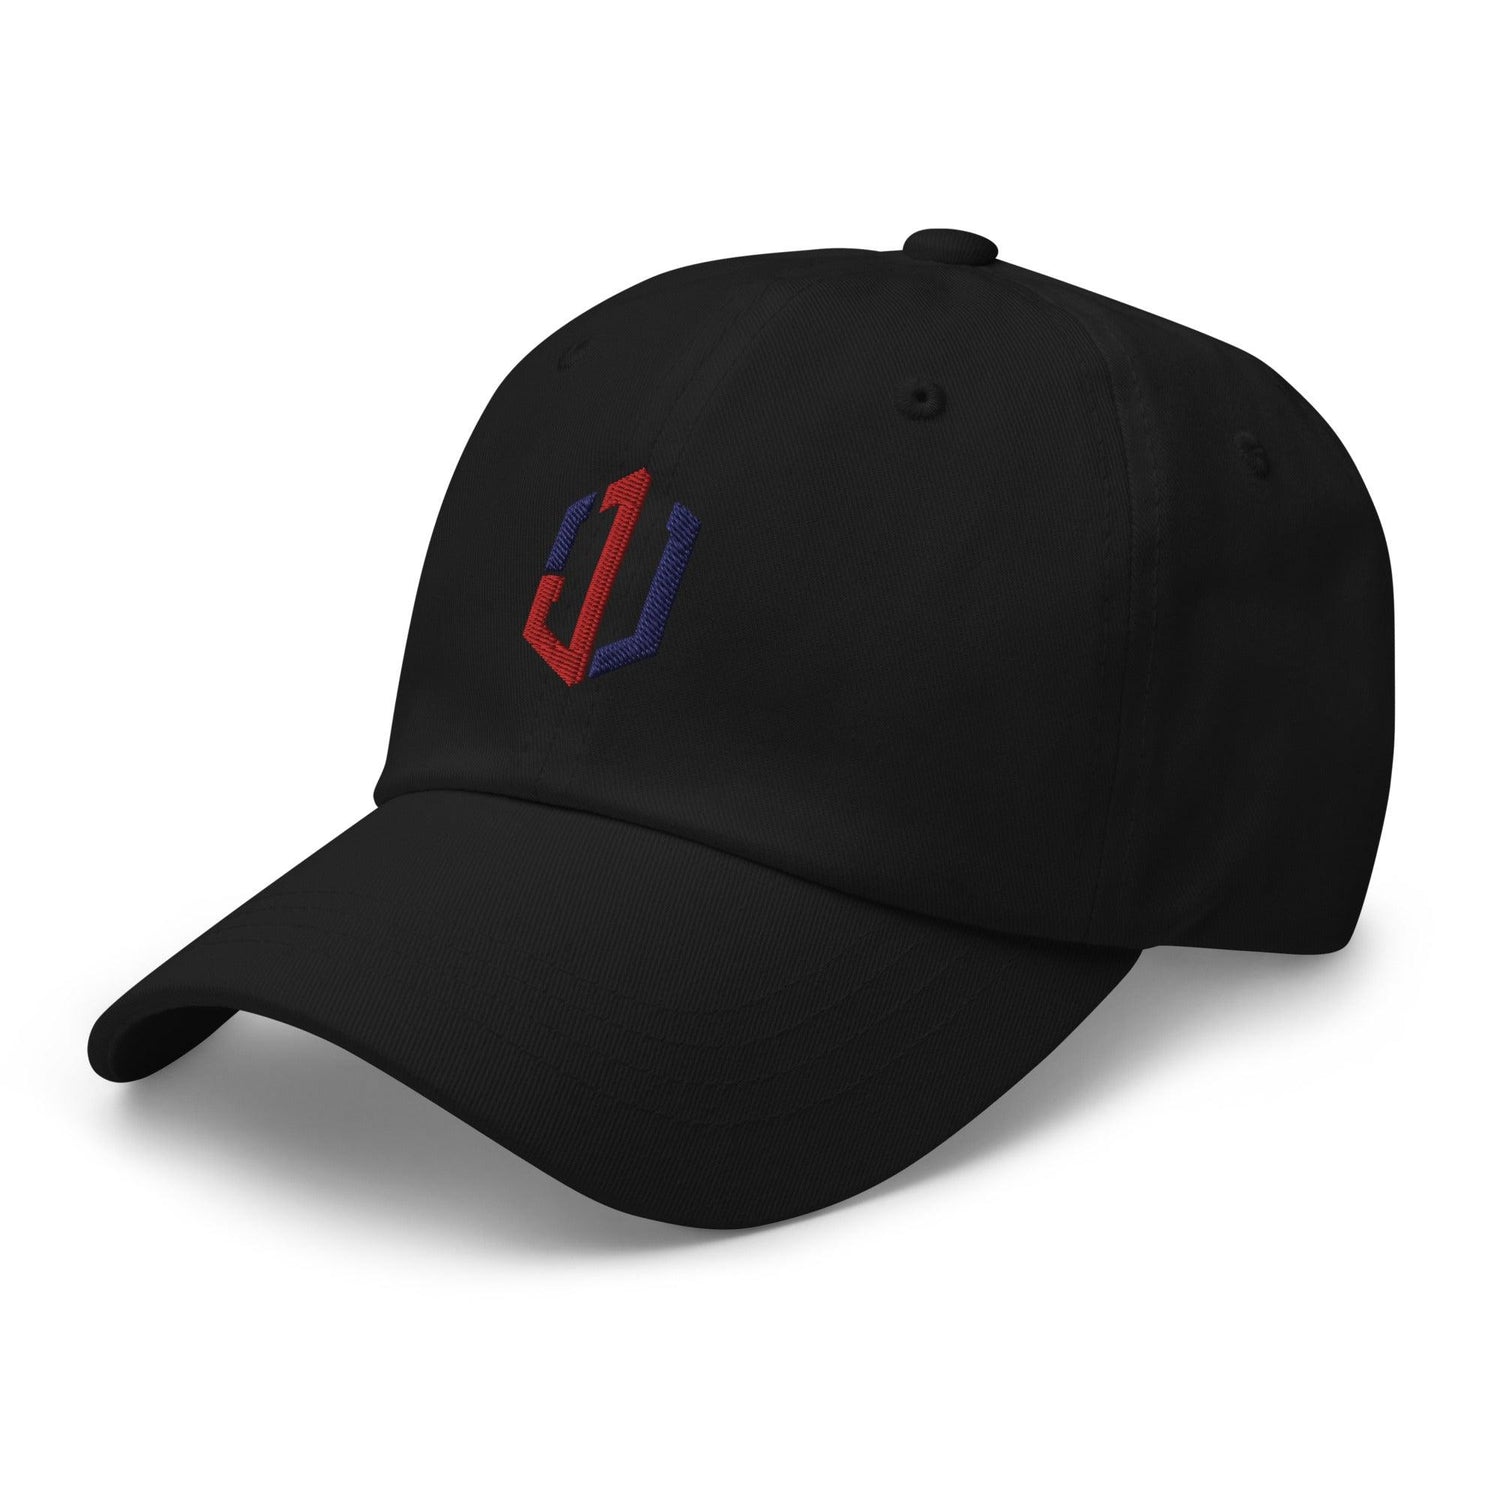 Jordan Walker “JW” hat - Fan Arch